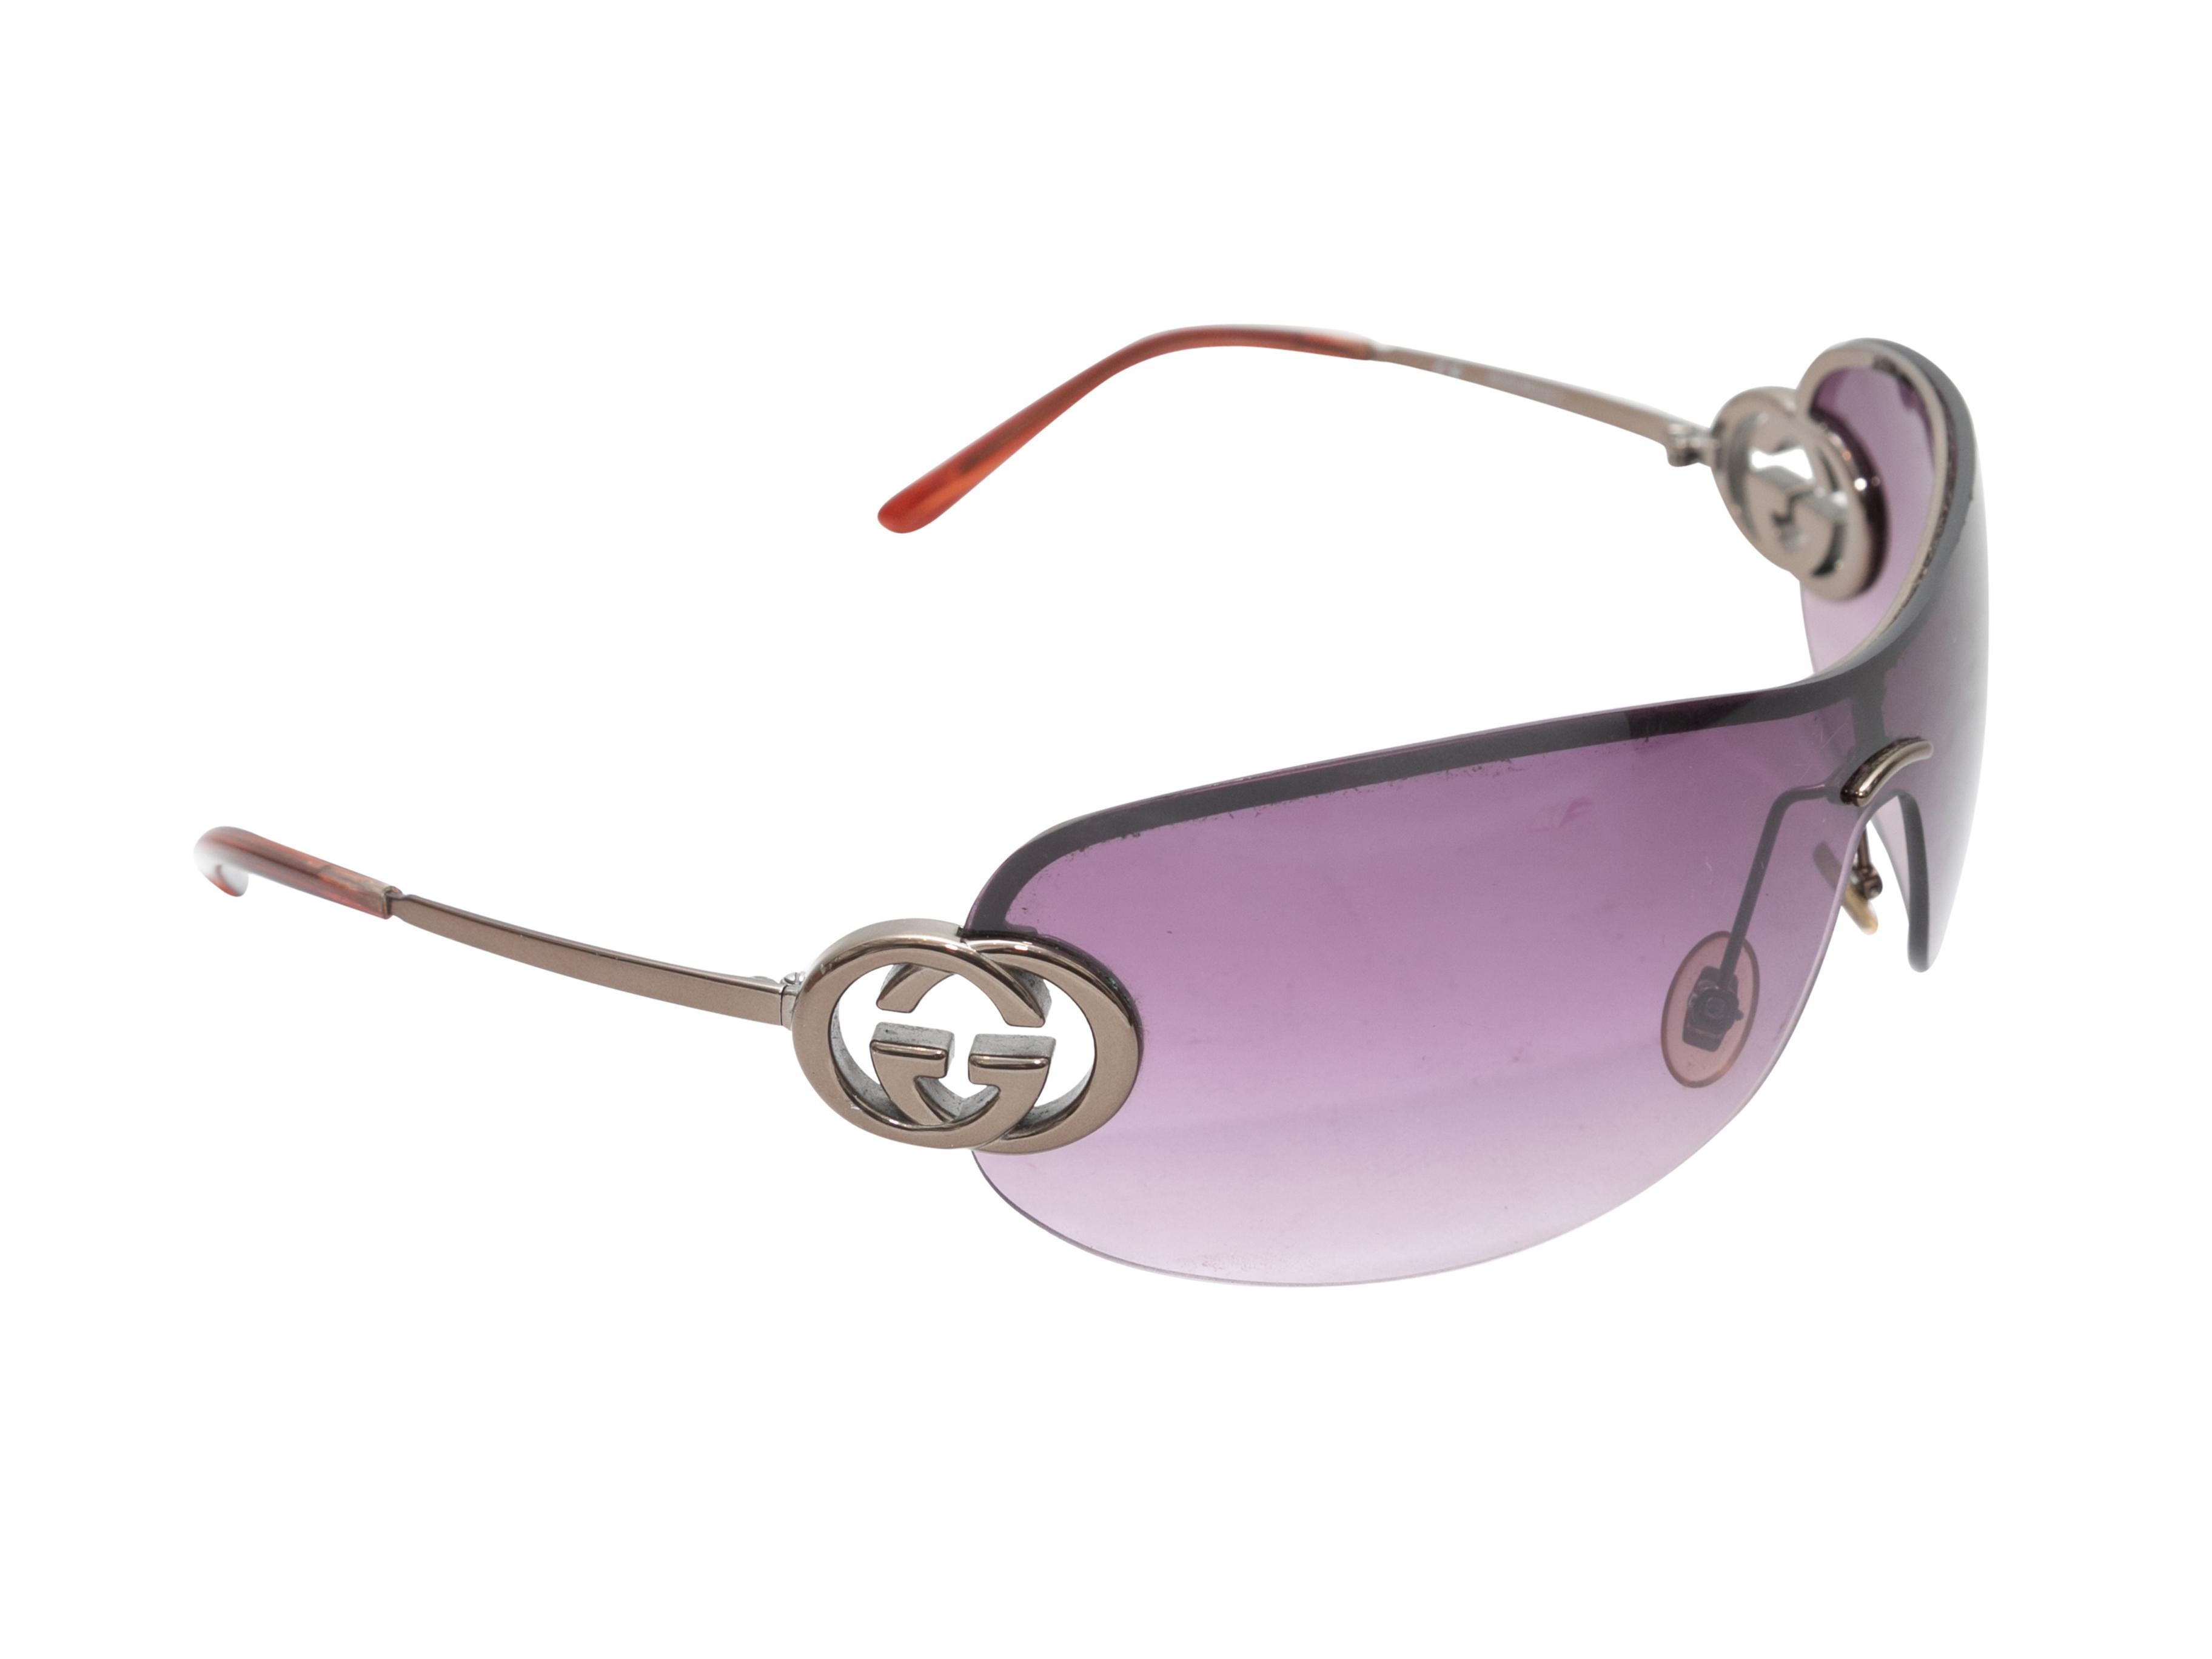 Silberfarbene GG Sonnenbrille im Vintage-Stil von Gucci. Lila getönte Linsen. 2